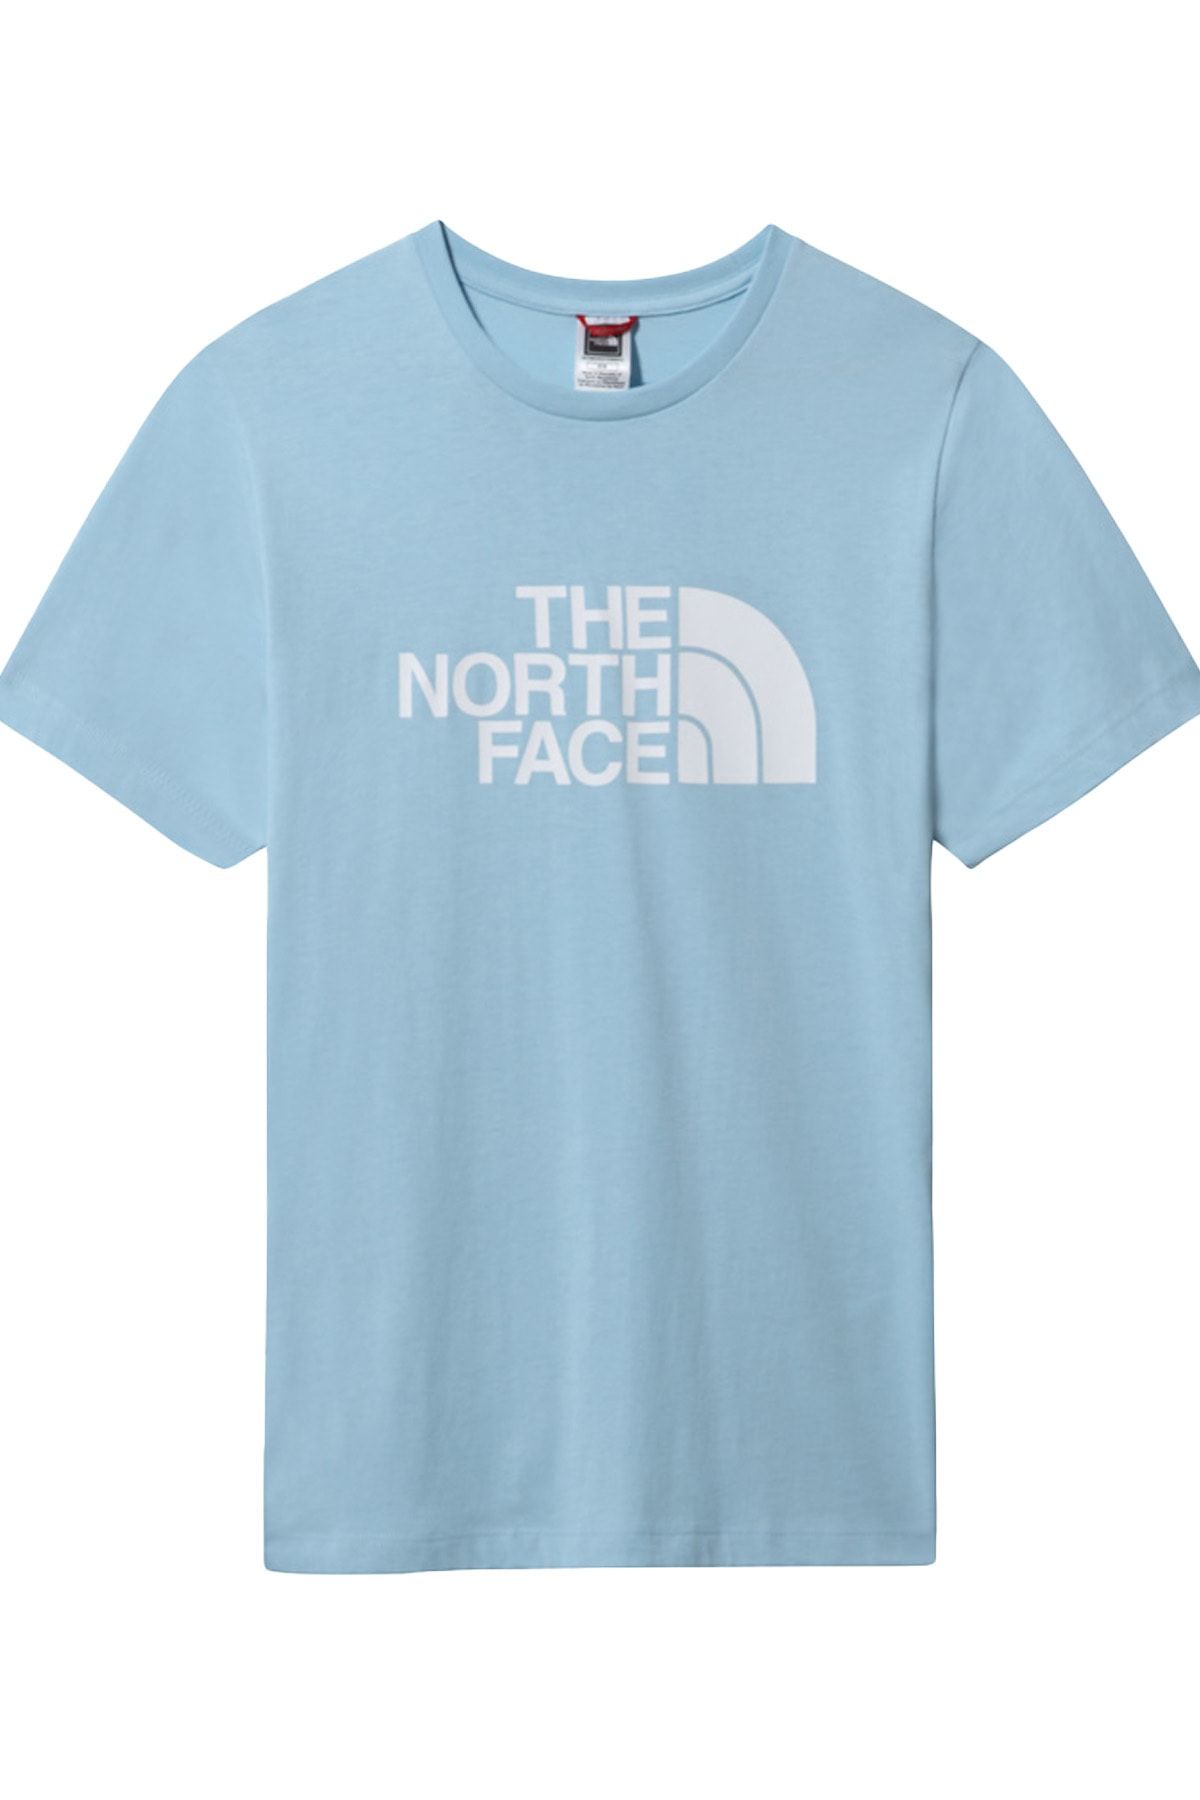 The North Face Easy Tee Kadın T-shirt - Nf0a4t1q